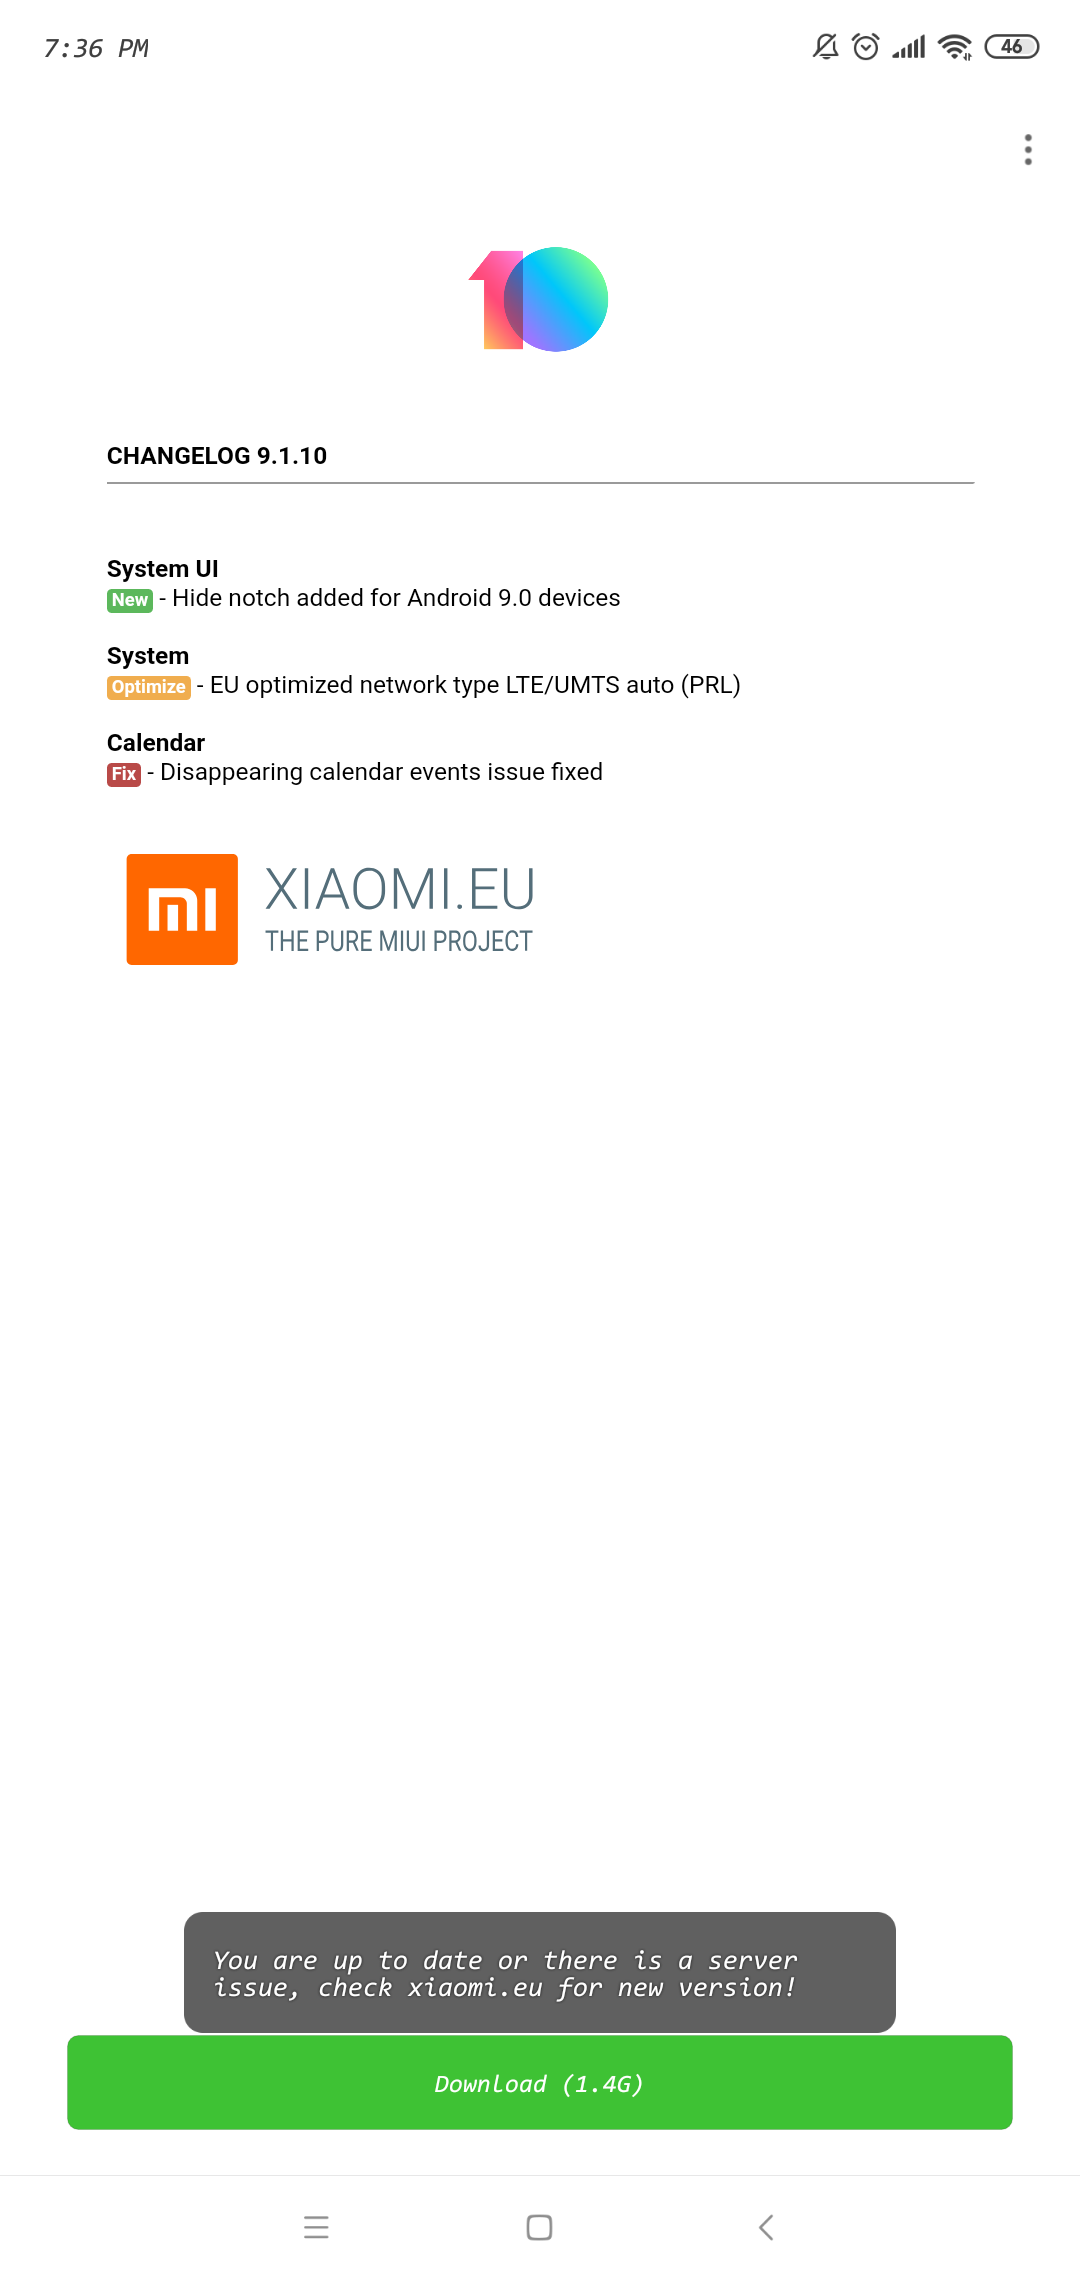 Screenshot_2019-01-14-19-36-16-284_pl.zdunex25.updater.png